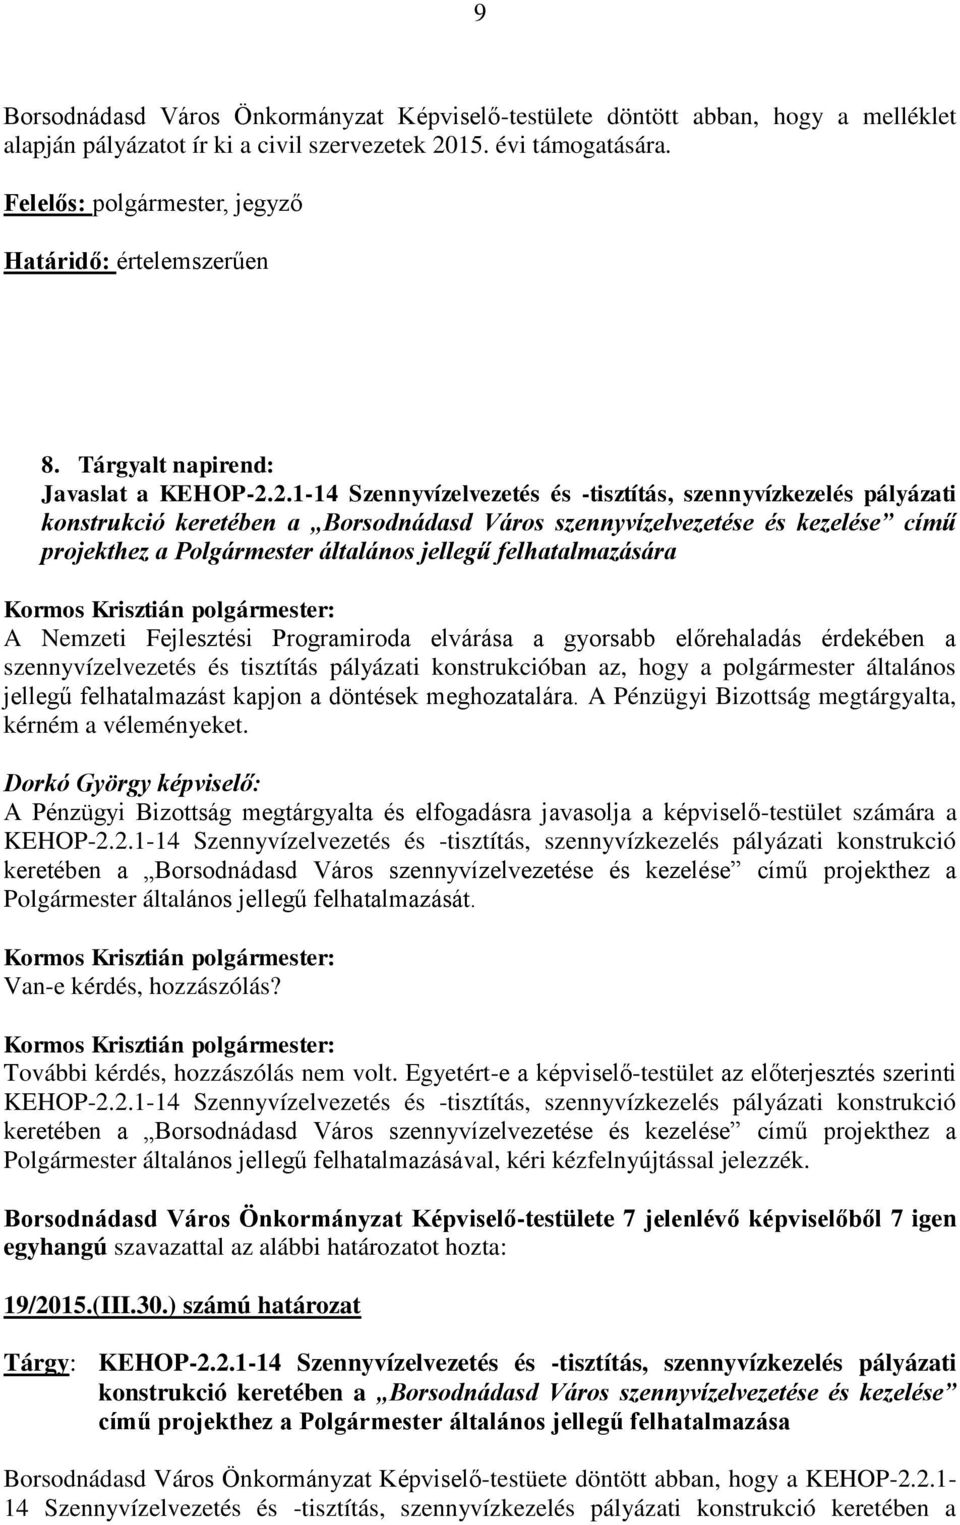 2.1-14 Szennyvízelvezetés és -tisztítás, szennyvízkezelés pályázati konstrukció keretében a Borsodnádasd Város szennyvízelvezetése és kezelése című projekthez a Polgármester általános jellegű